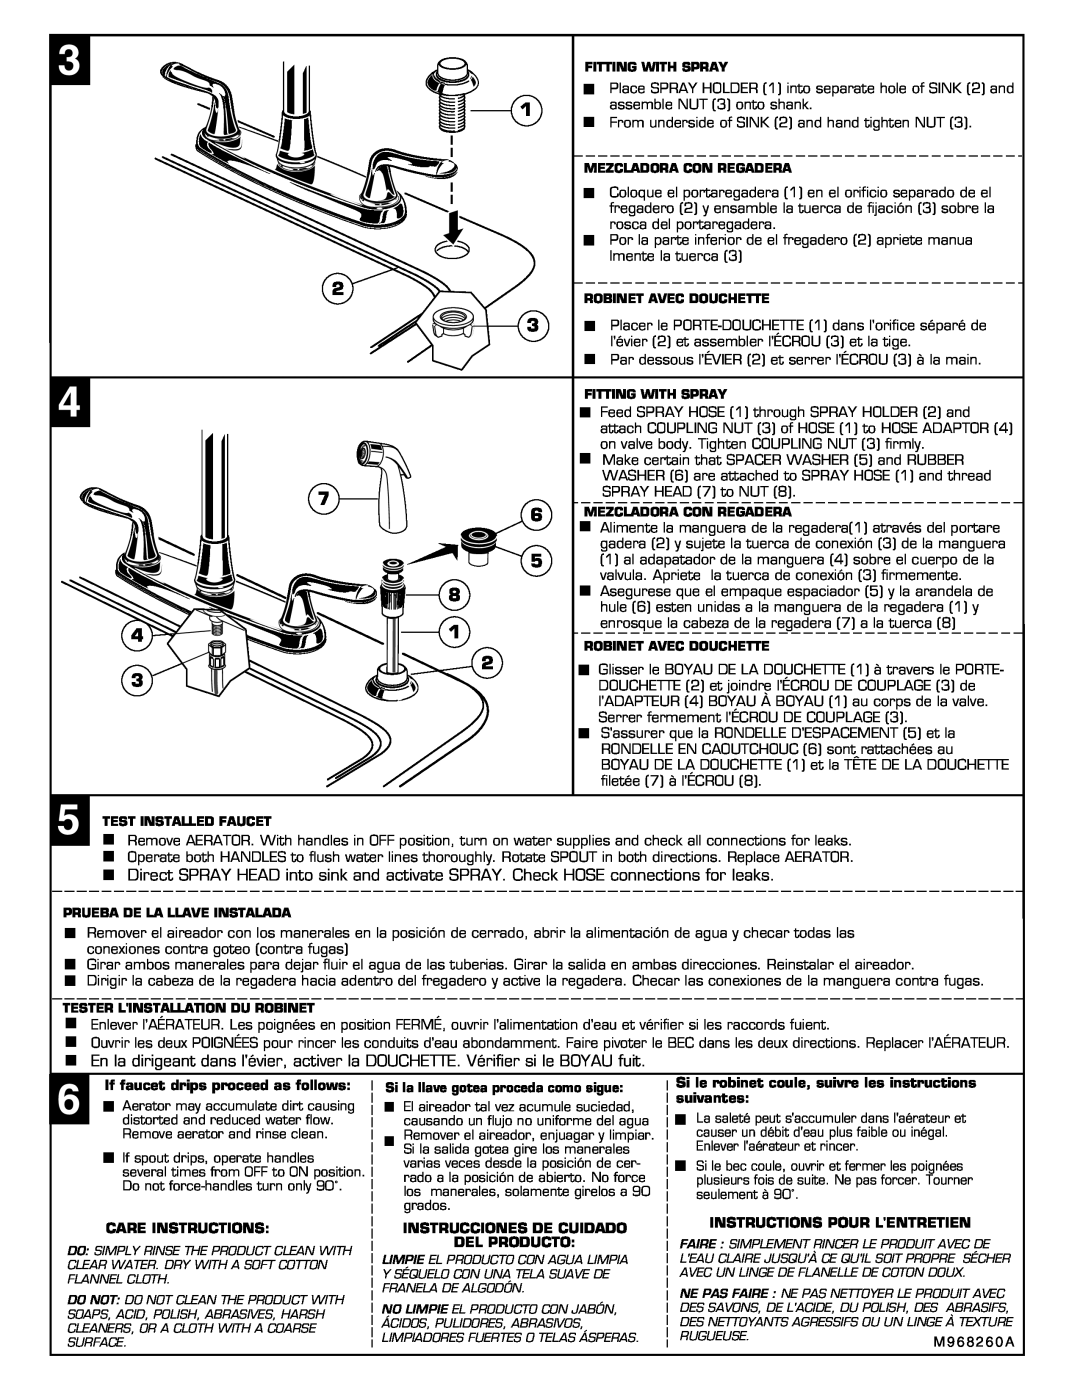 American Standard 4275.551 If faucet drips proceed as follows, Care Instructions, Instrucciones De Cuidado Del Producto 